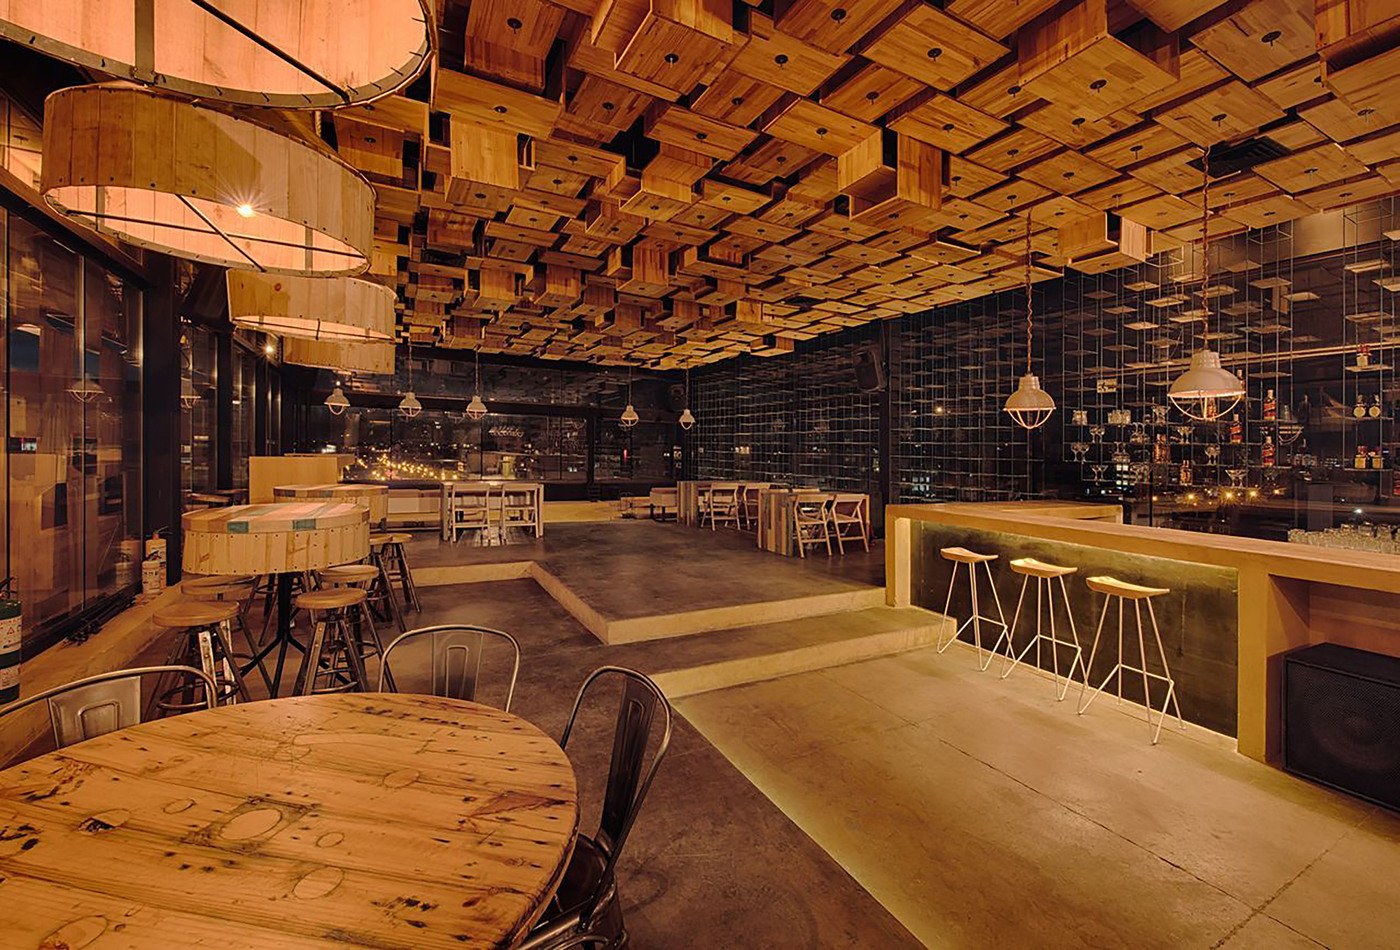 Ресторан в деревянном стиле